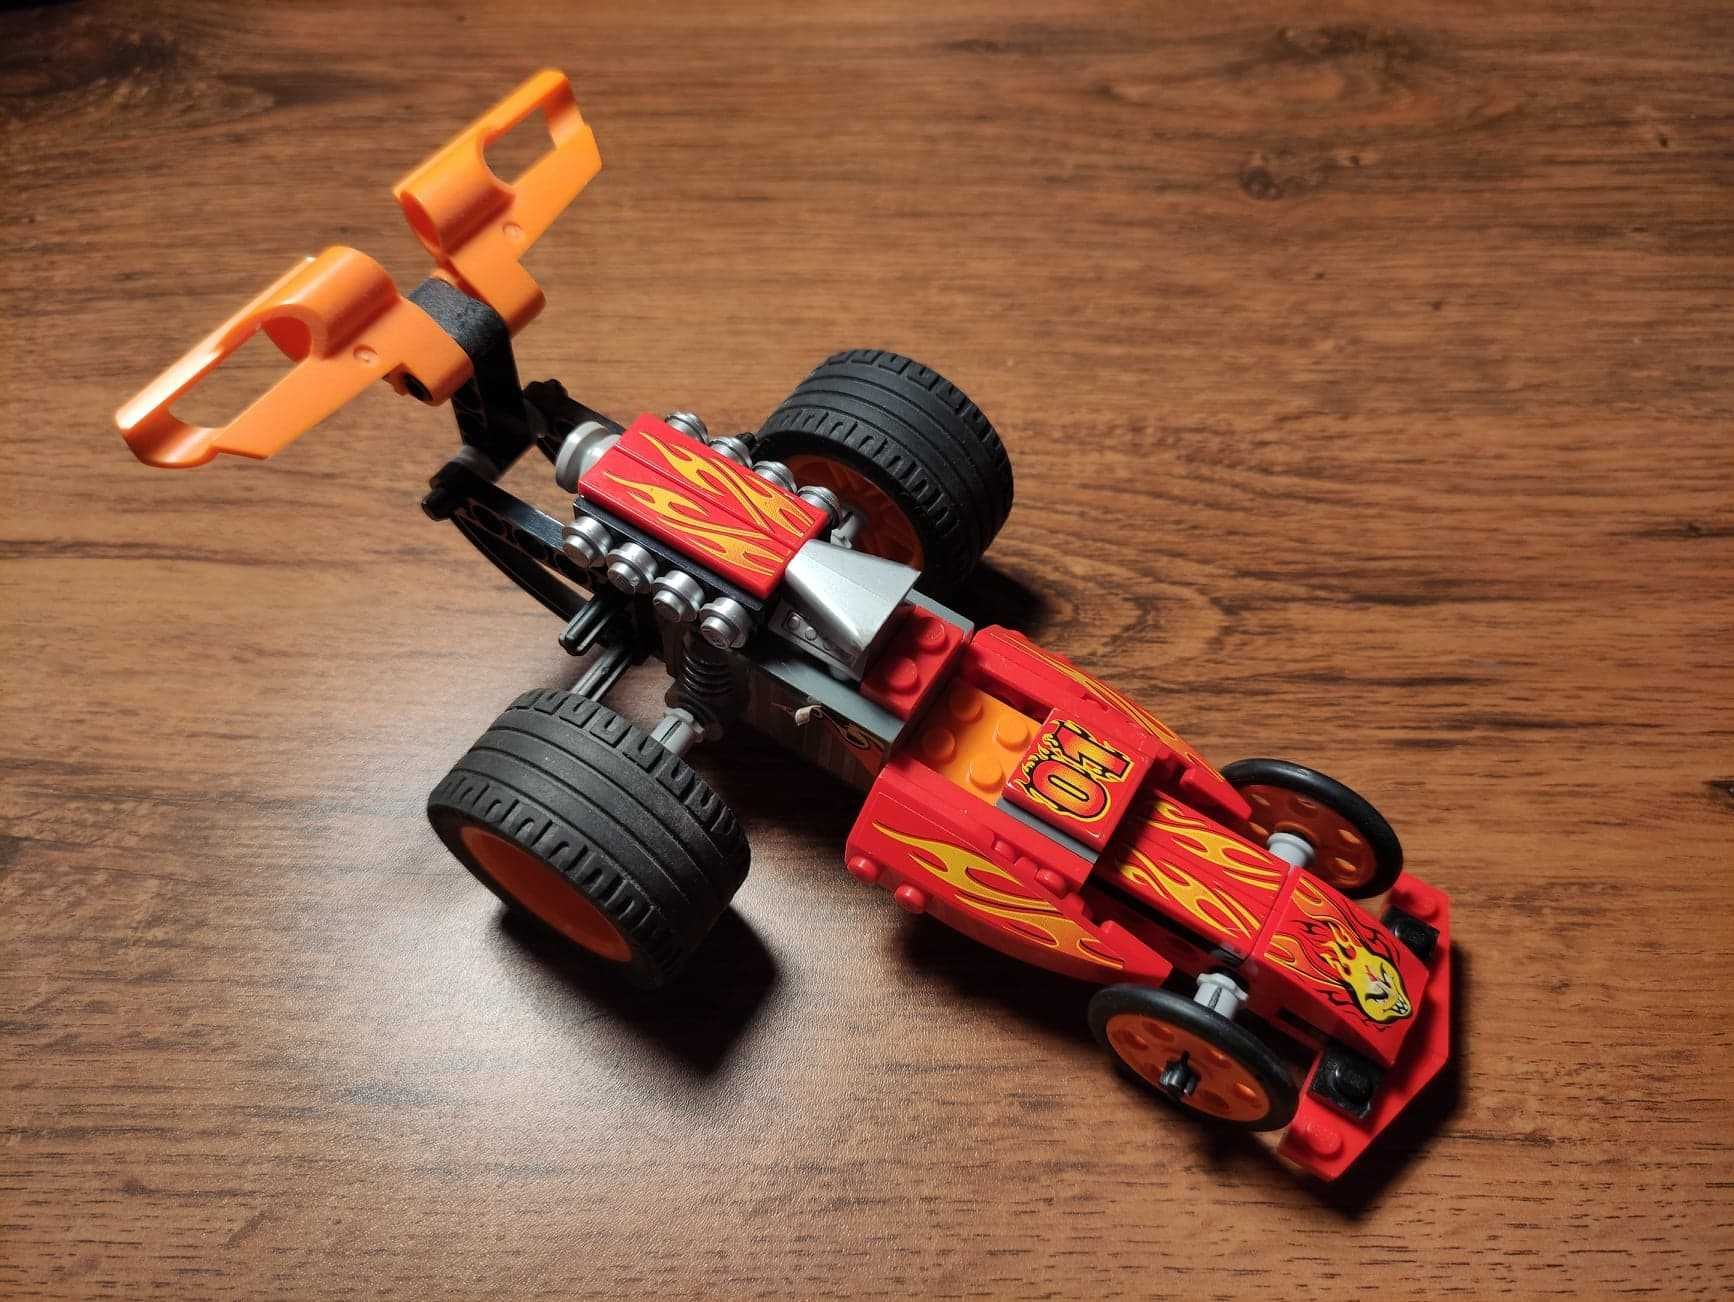 LEGO samochód z napędem wyścigówka.